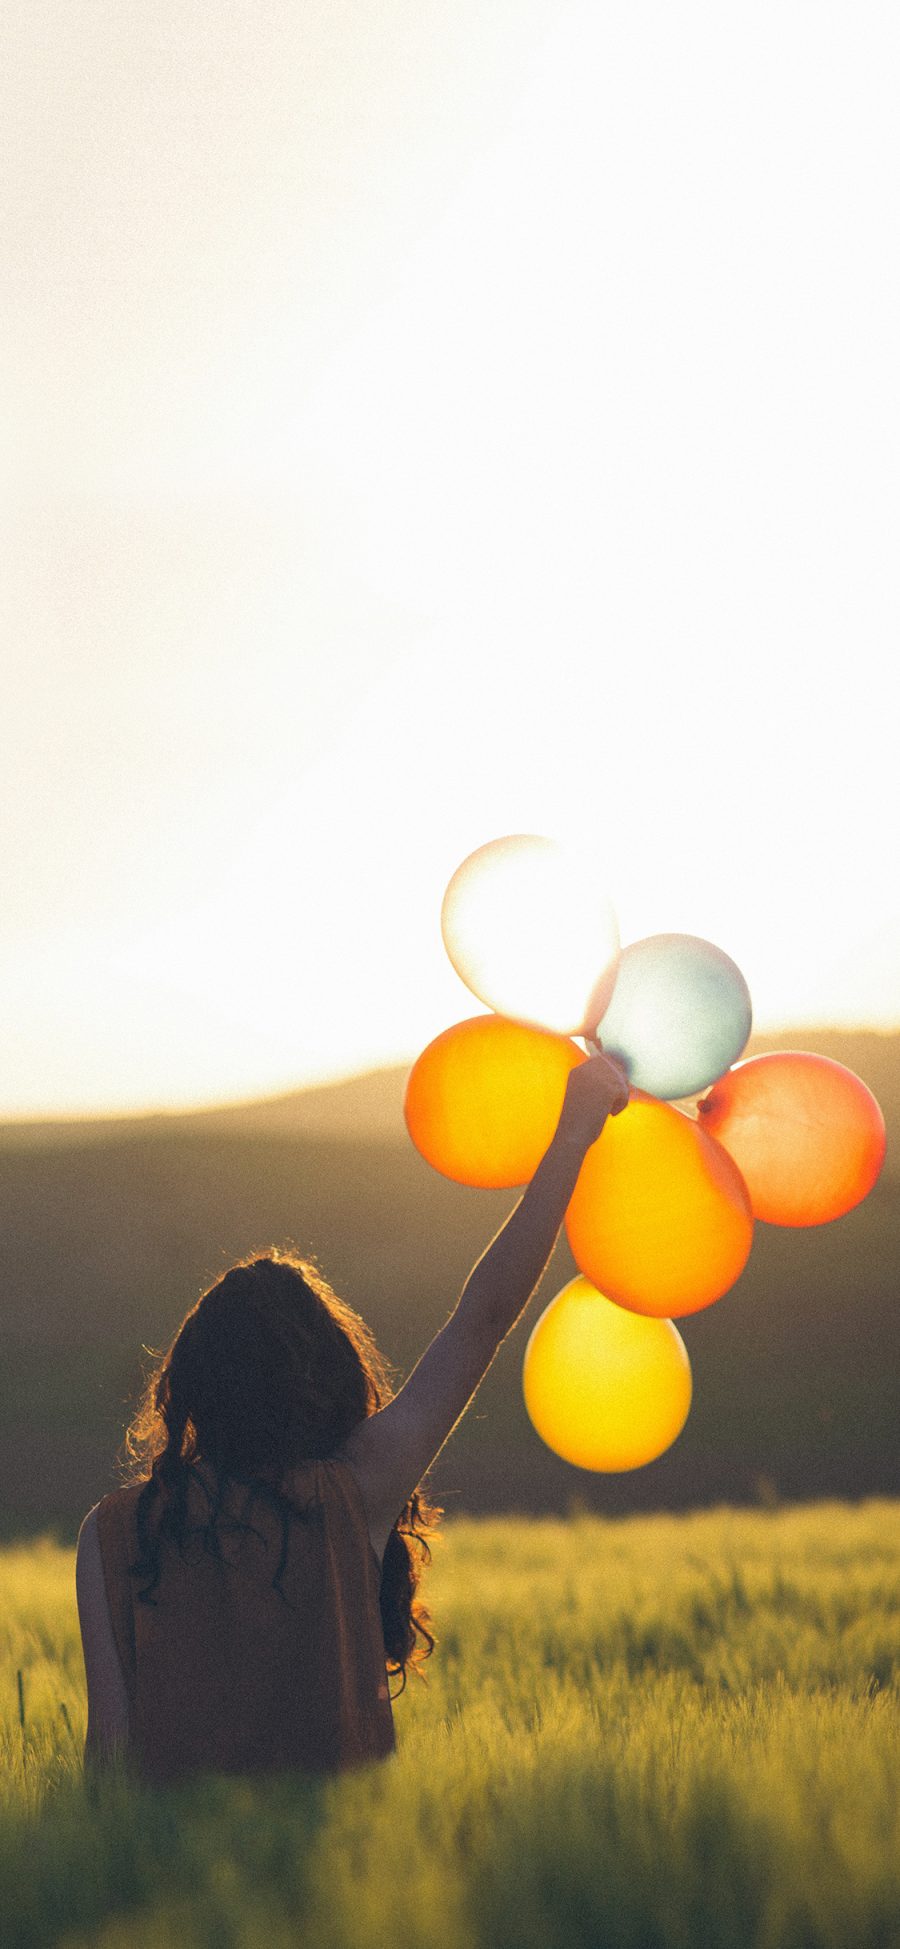 [2436×1125]草丛 女孩 背影 气球 唯美 苹果手机壁纸图片